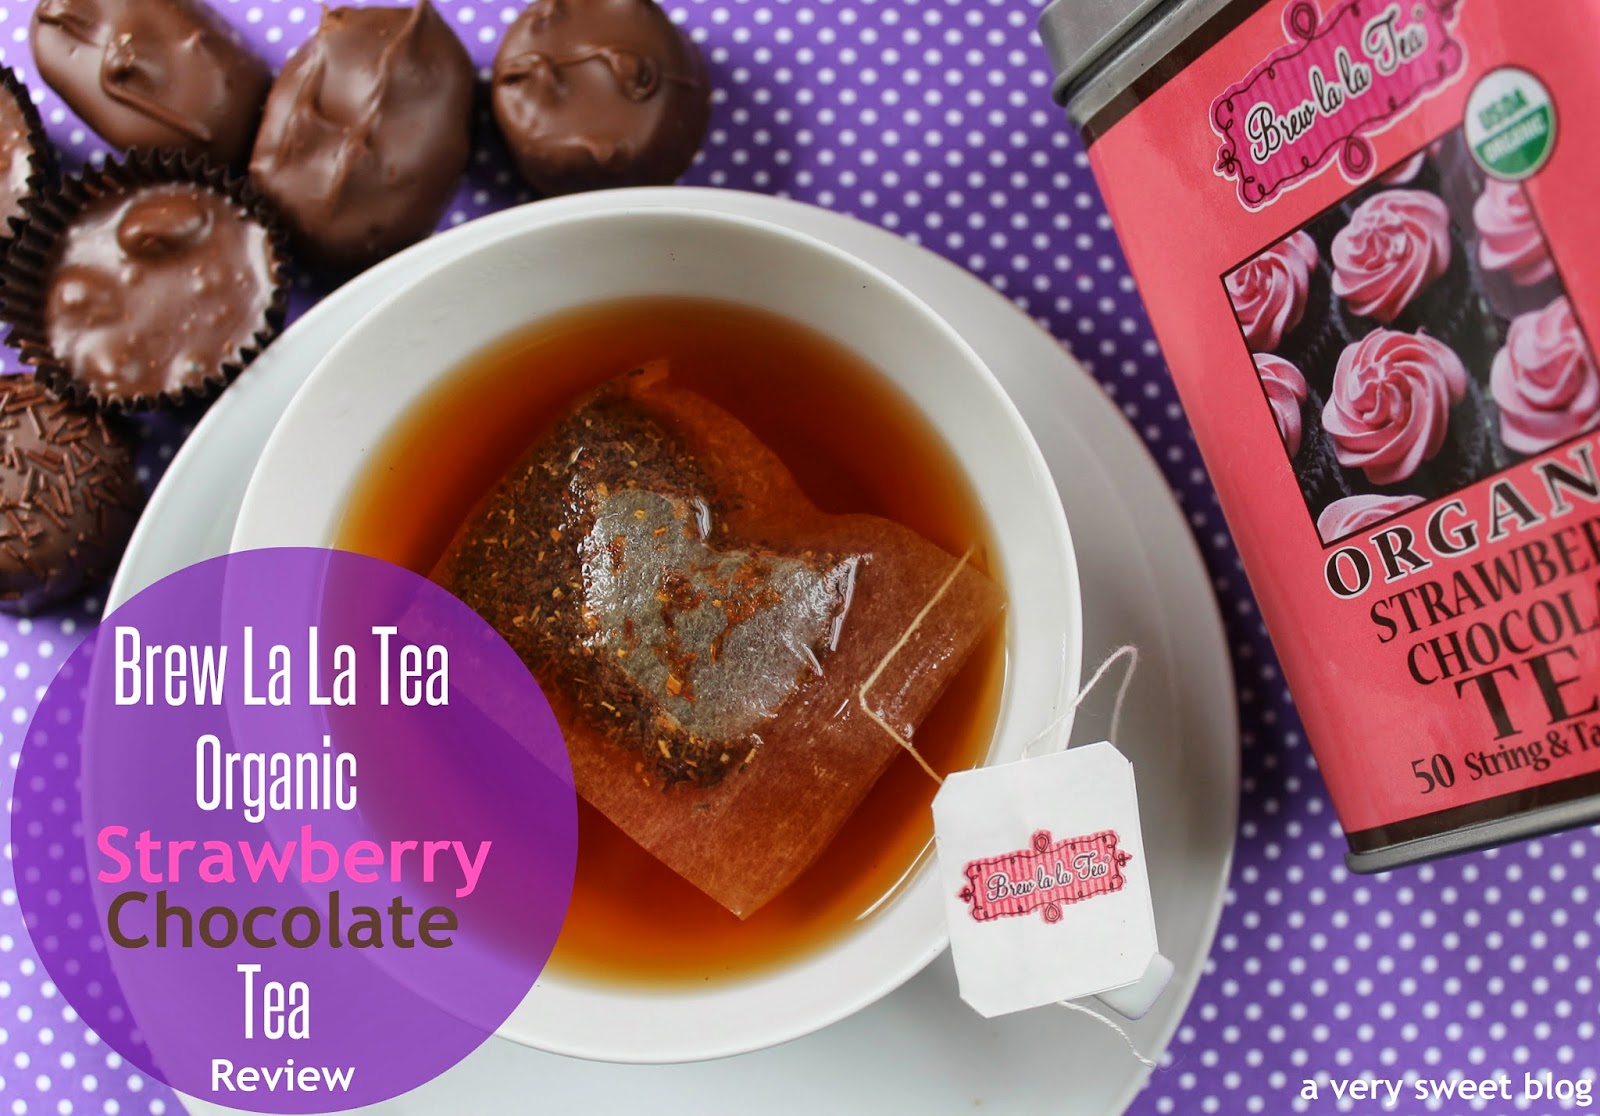 Ooh La La Brand: Brew La La Organic Strawberry Chocolate Tea Product Review